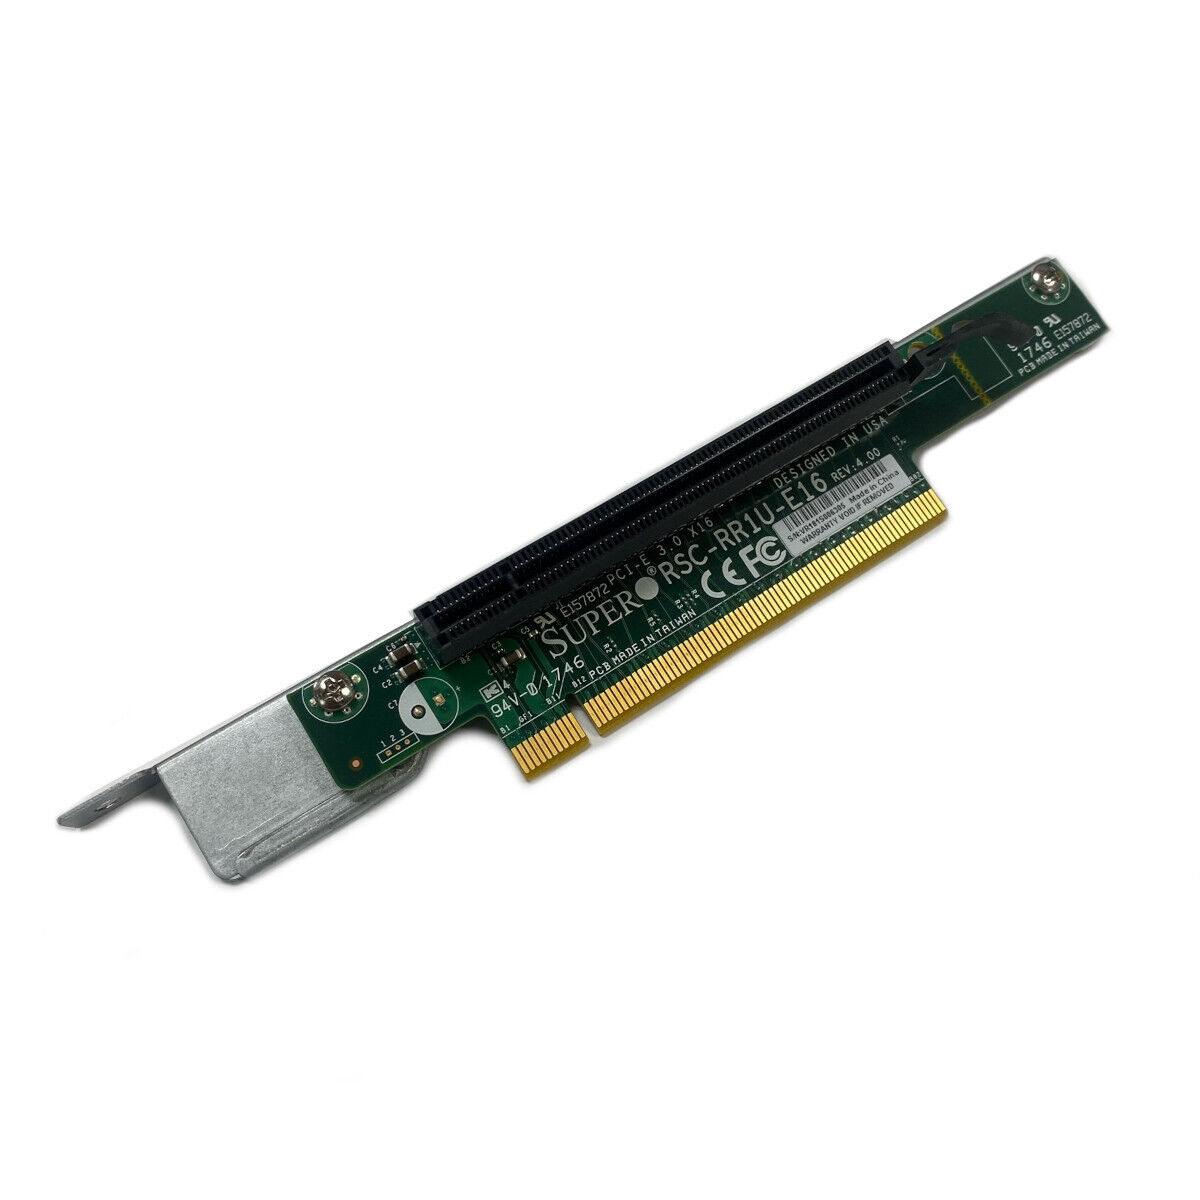 Supermicro RSC-RR1U-E16 1U PCI-Express x16 Riser Card